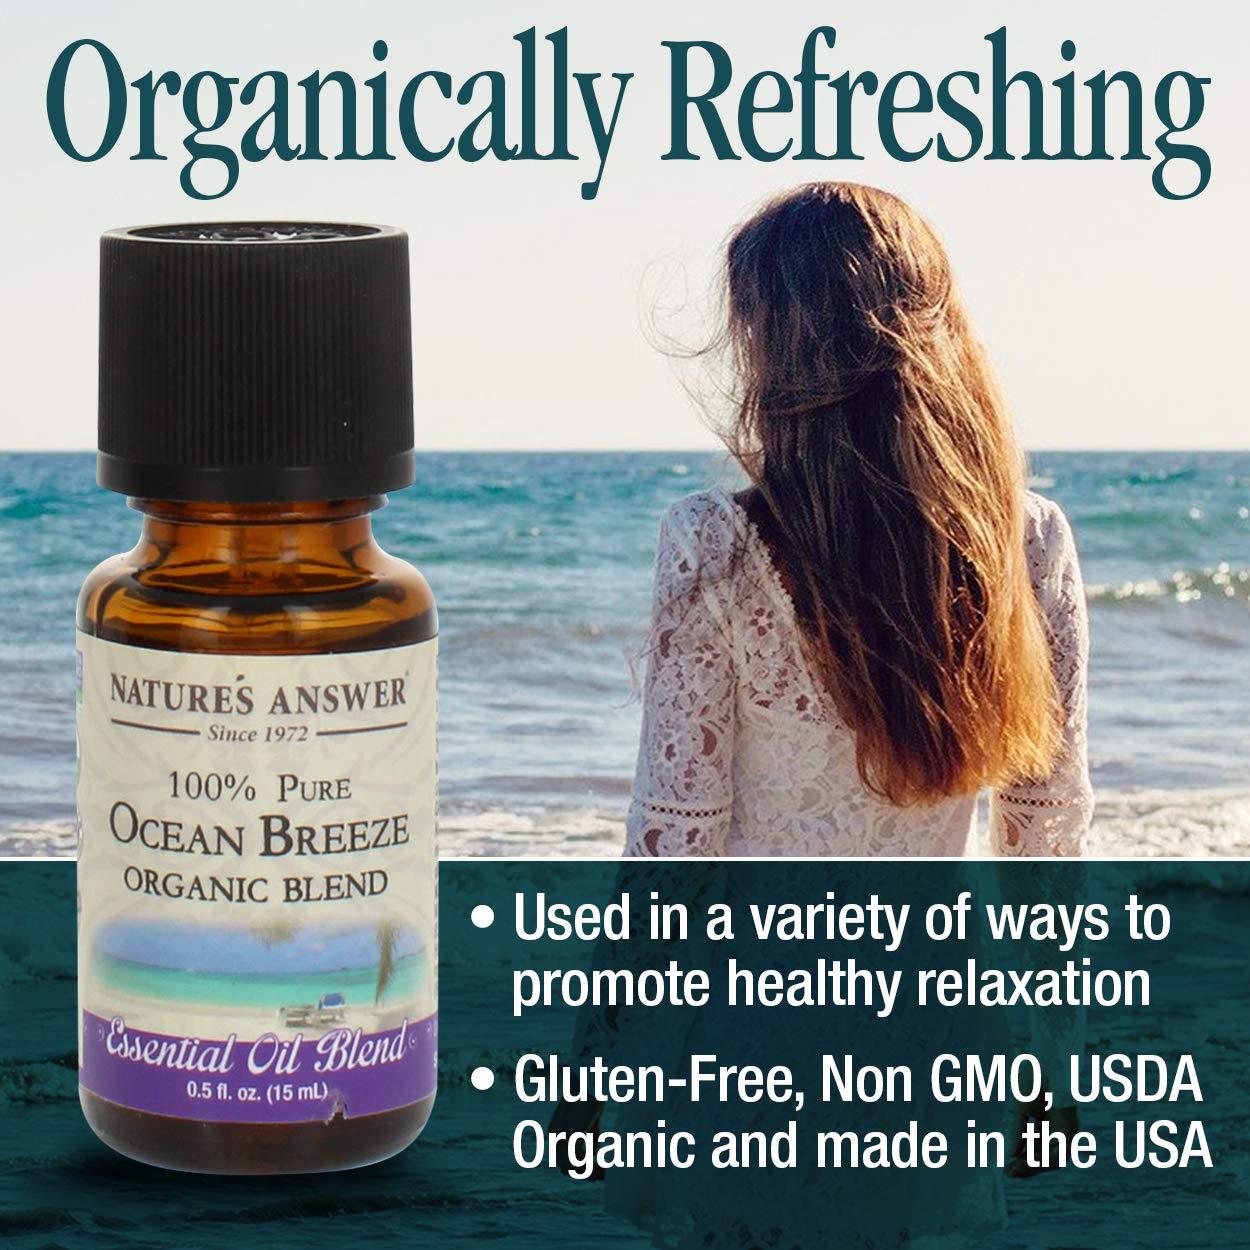 Nature's Answer Essential Oil, Organic, 100% Pure, Lavender - 0.5 fl oz